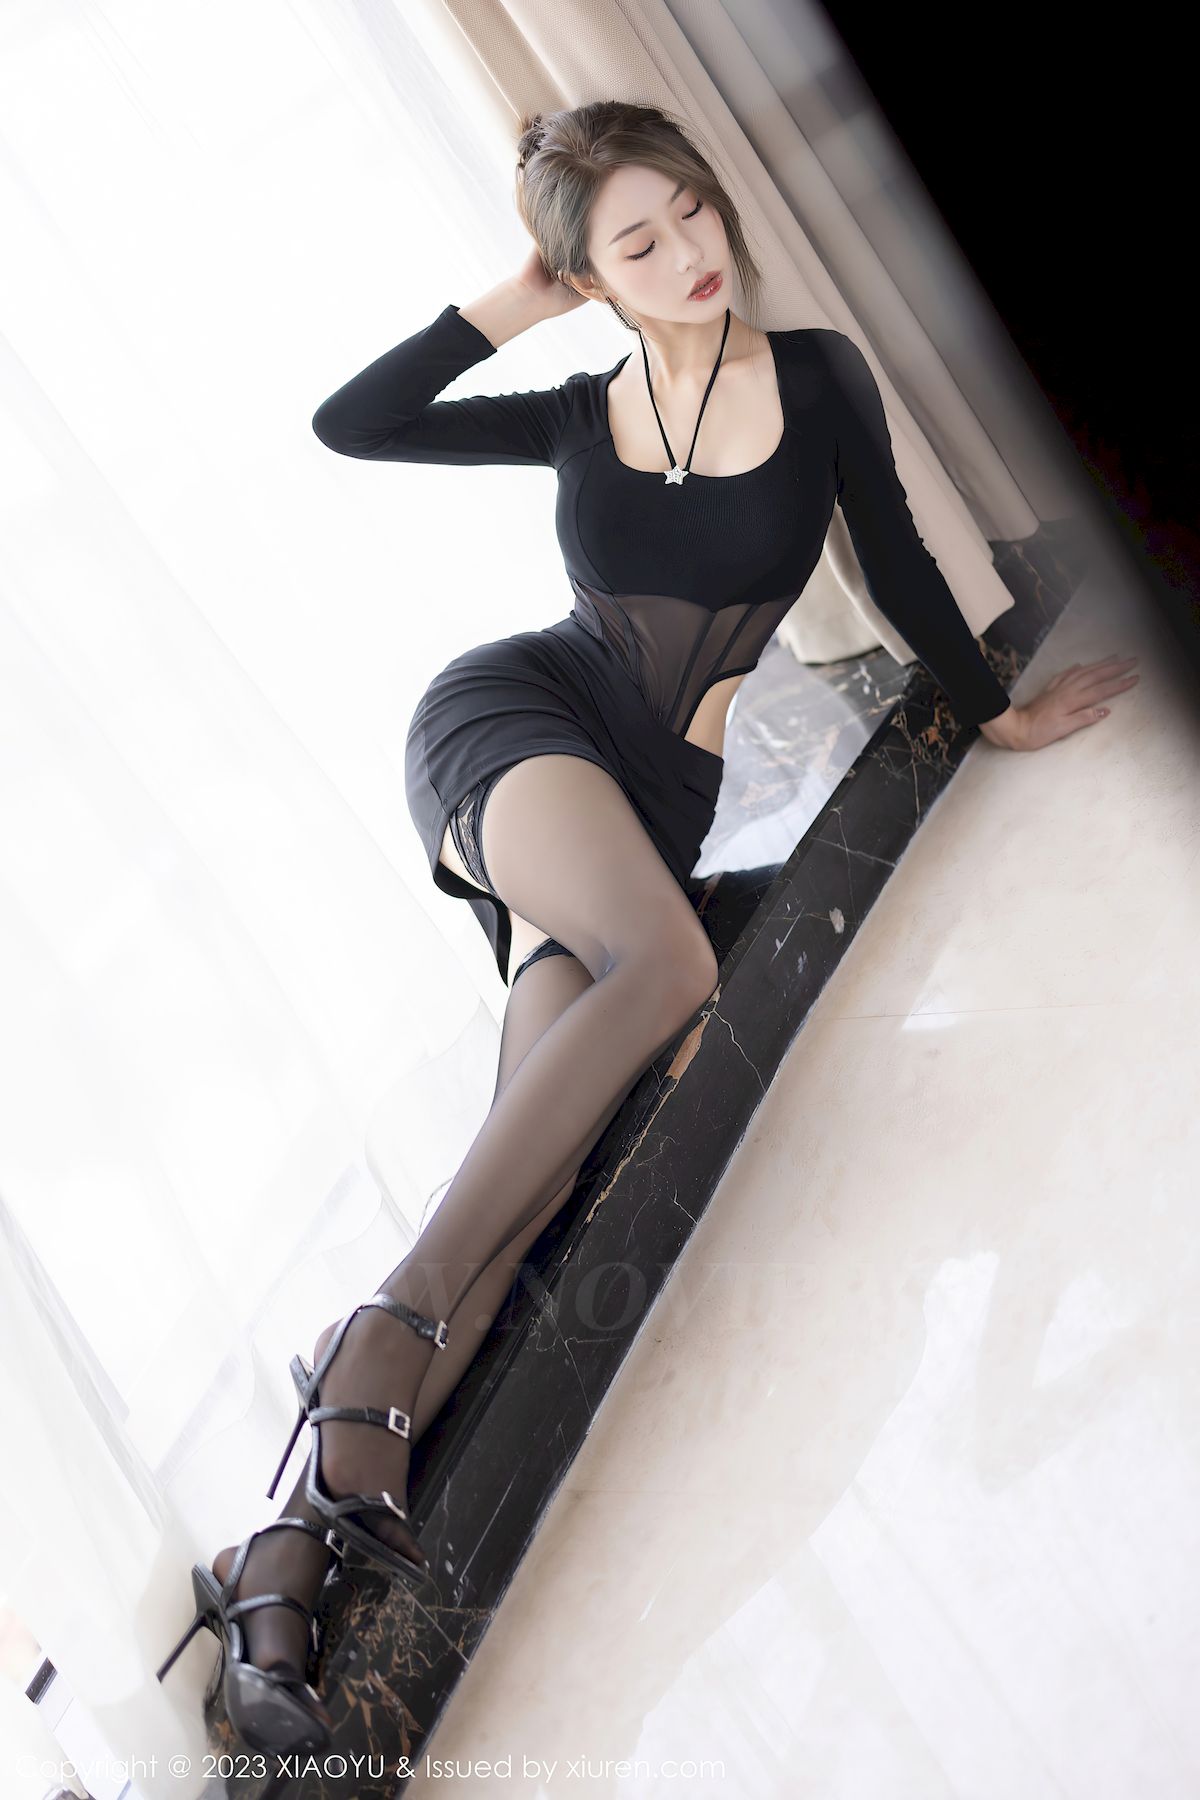 苏苏阿黑色上衣搭配黑色短裙性感写真